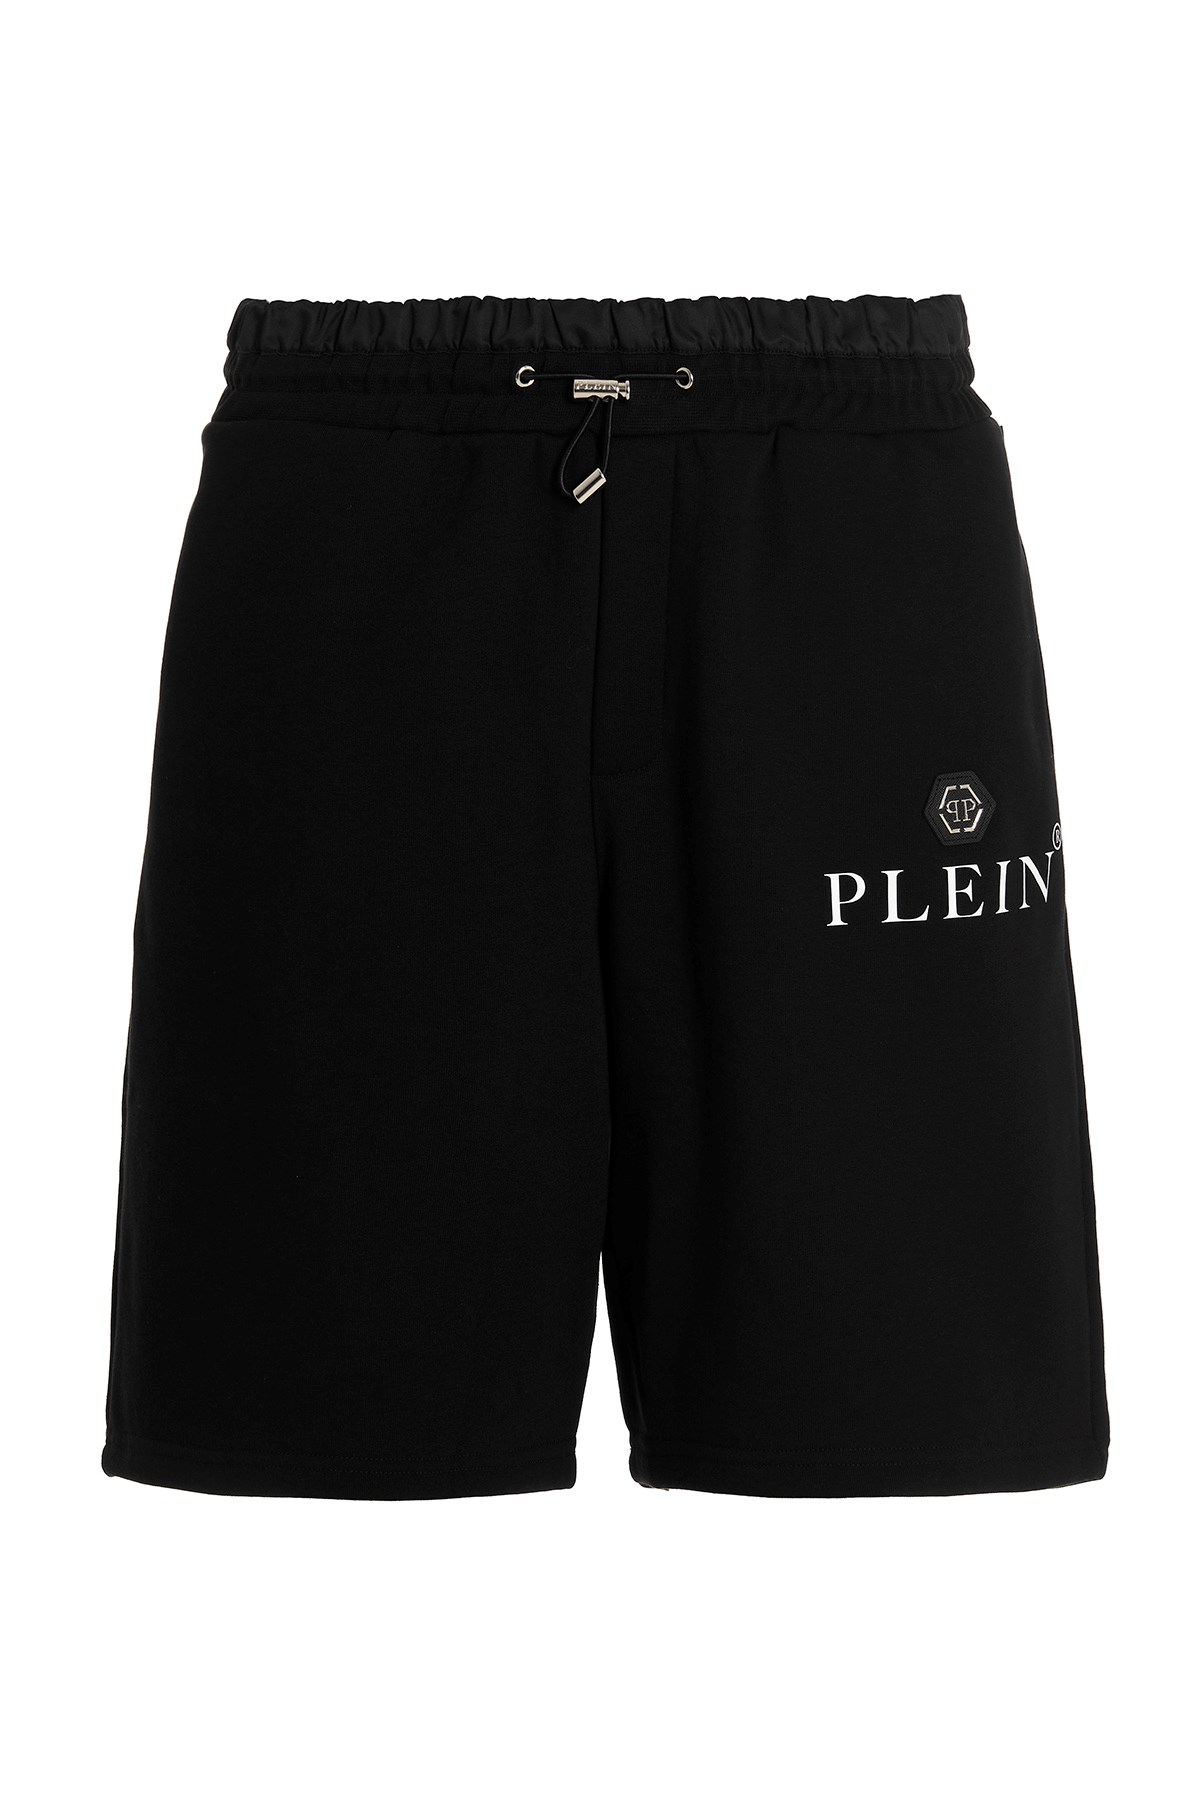 PHILIPP PLEIN Bermuda-Shorts Mit Logo